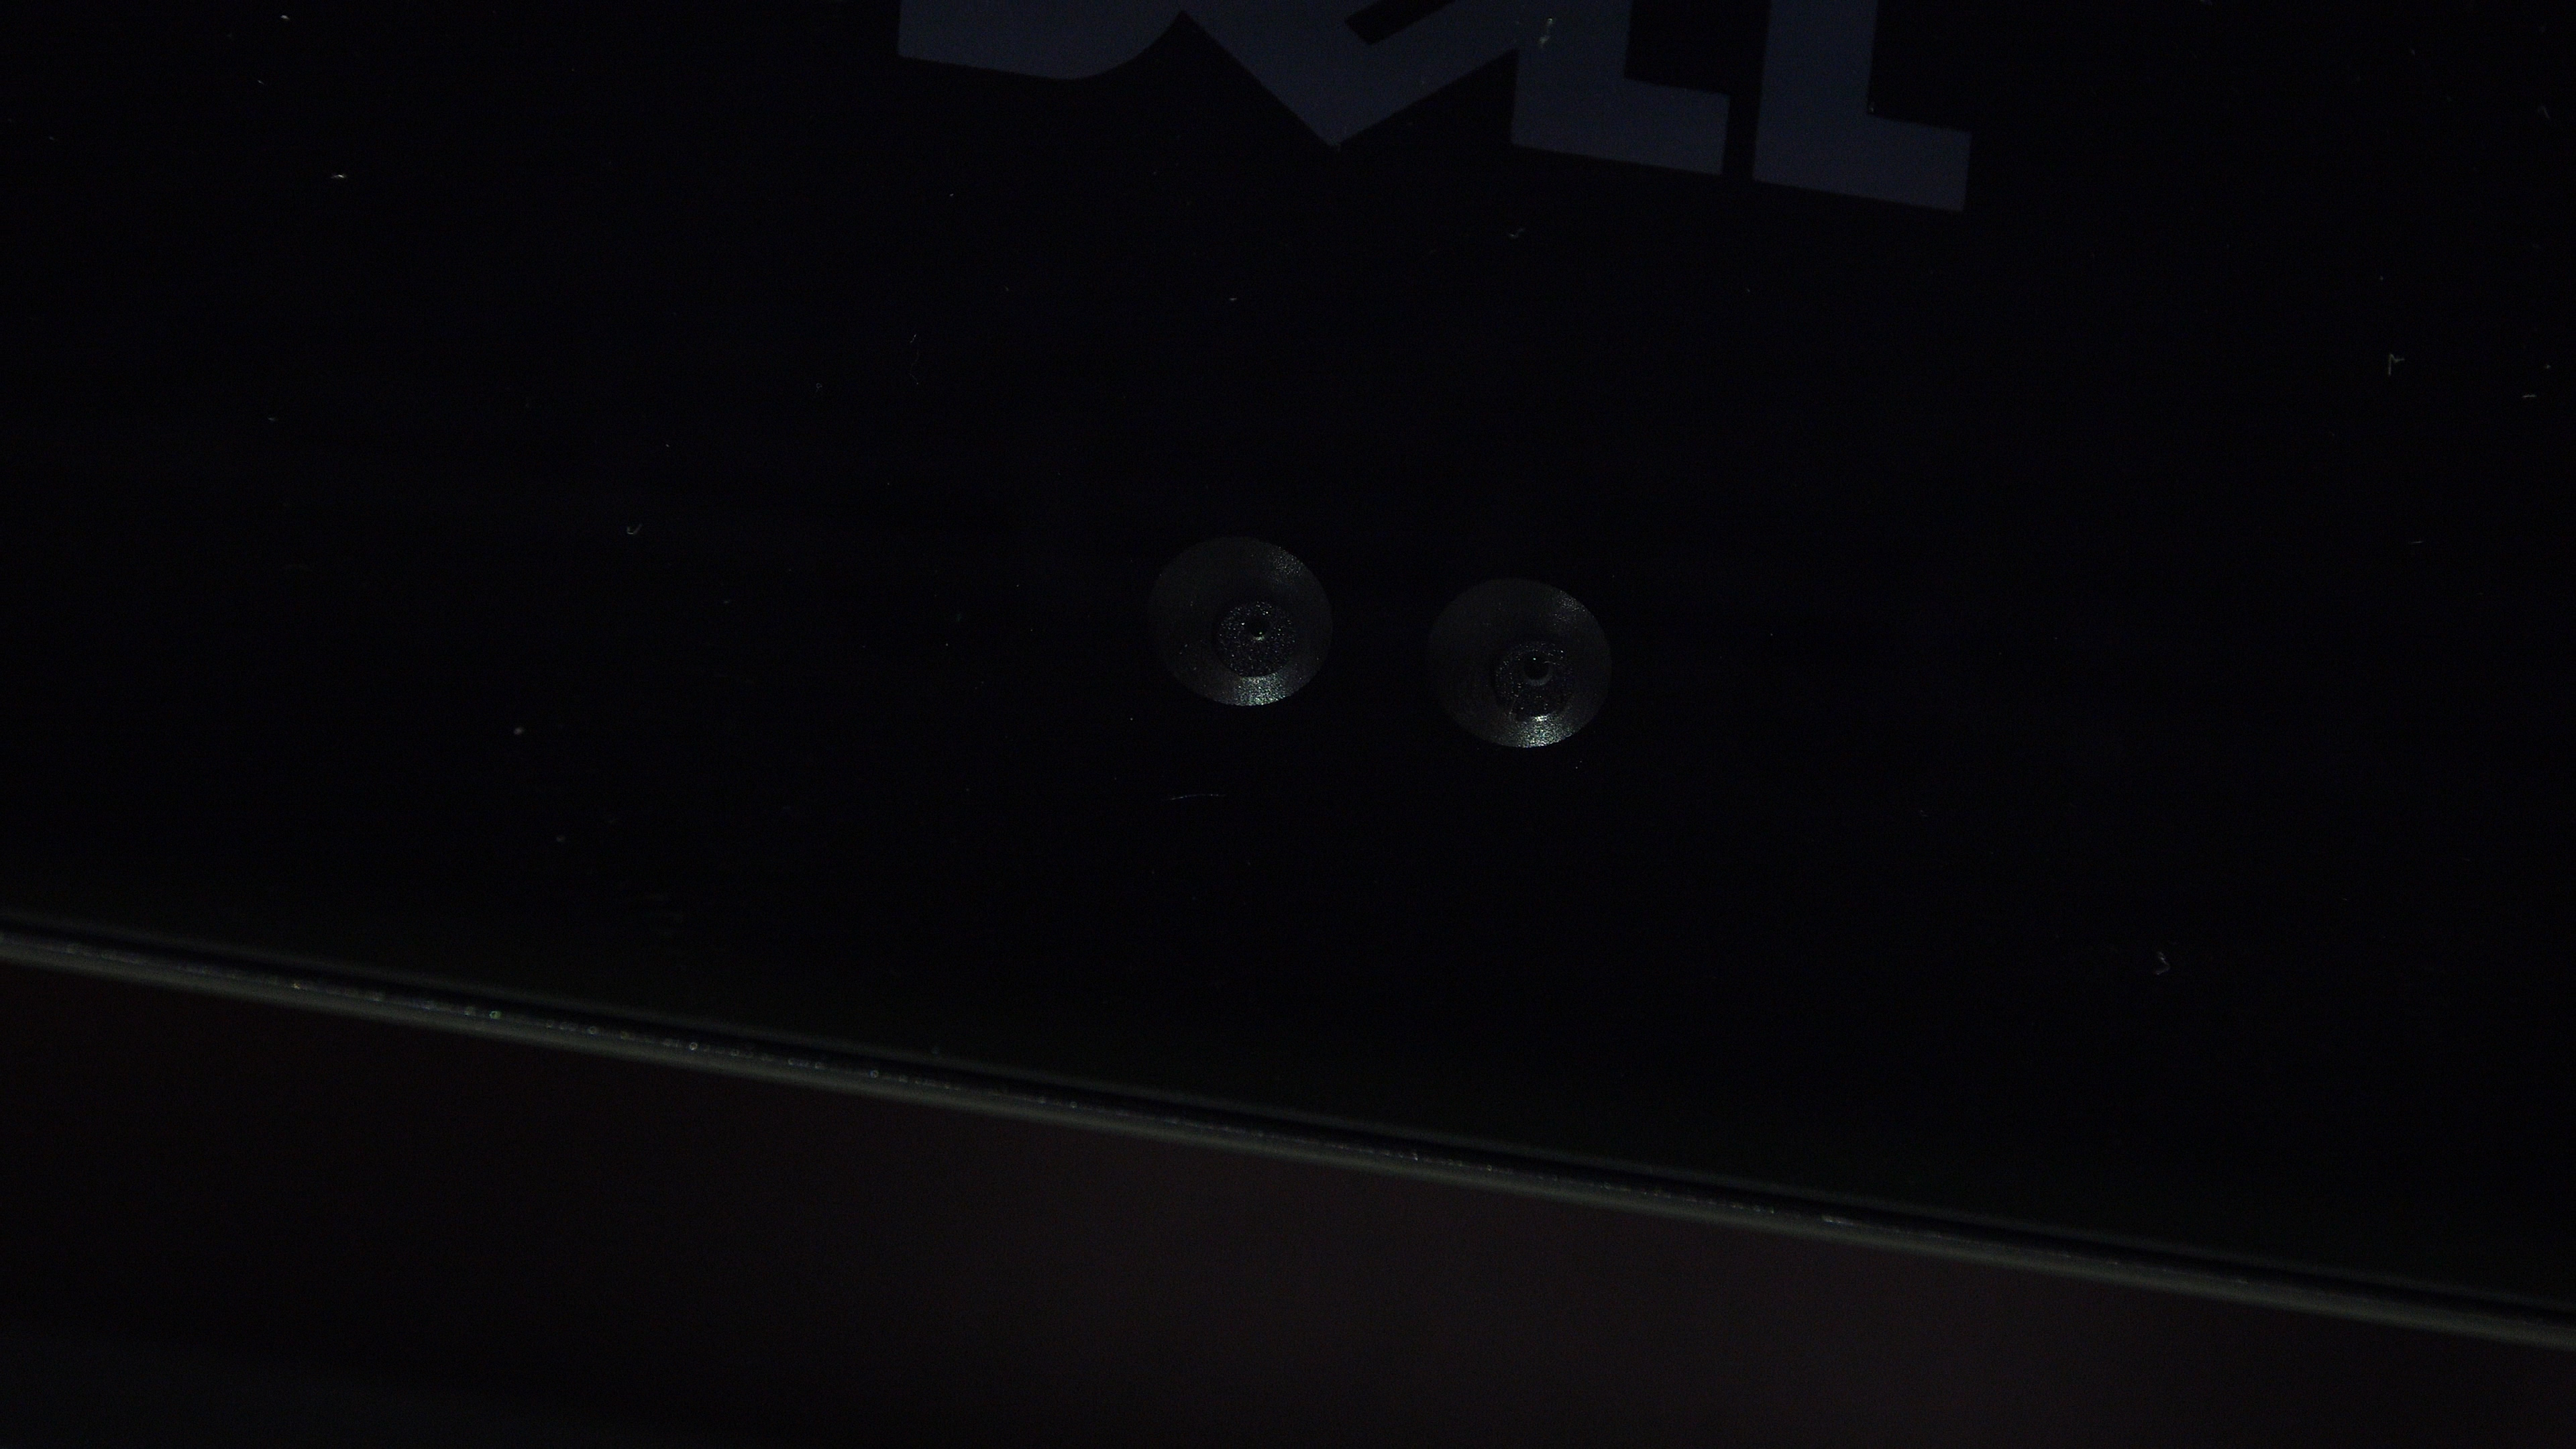 Yeni Dell XPS 27 hepsi bir arada '4K IPS ekran ve entegre soundbar'